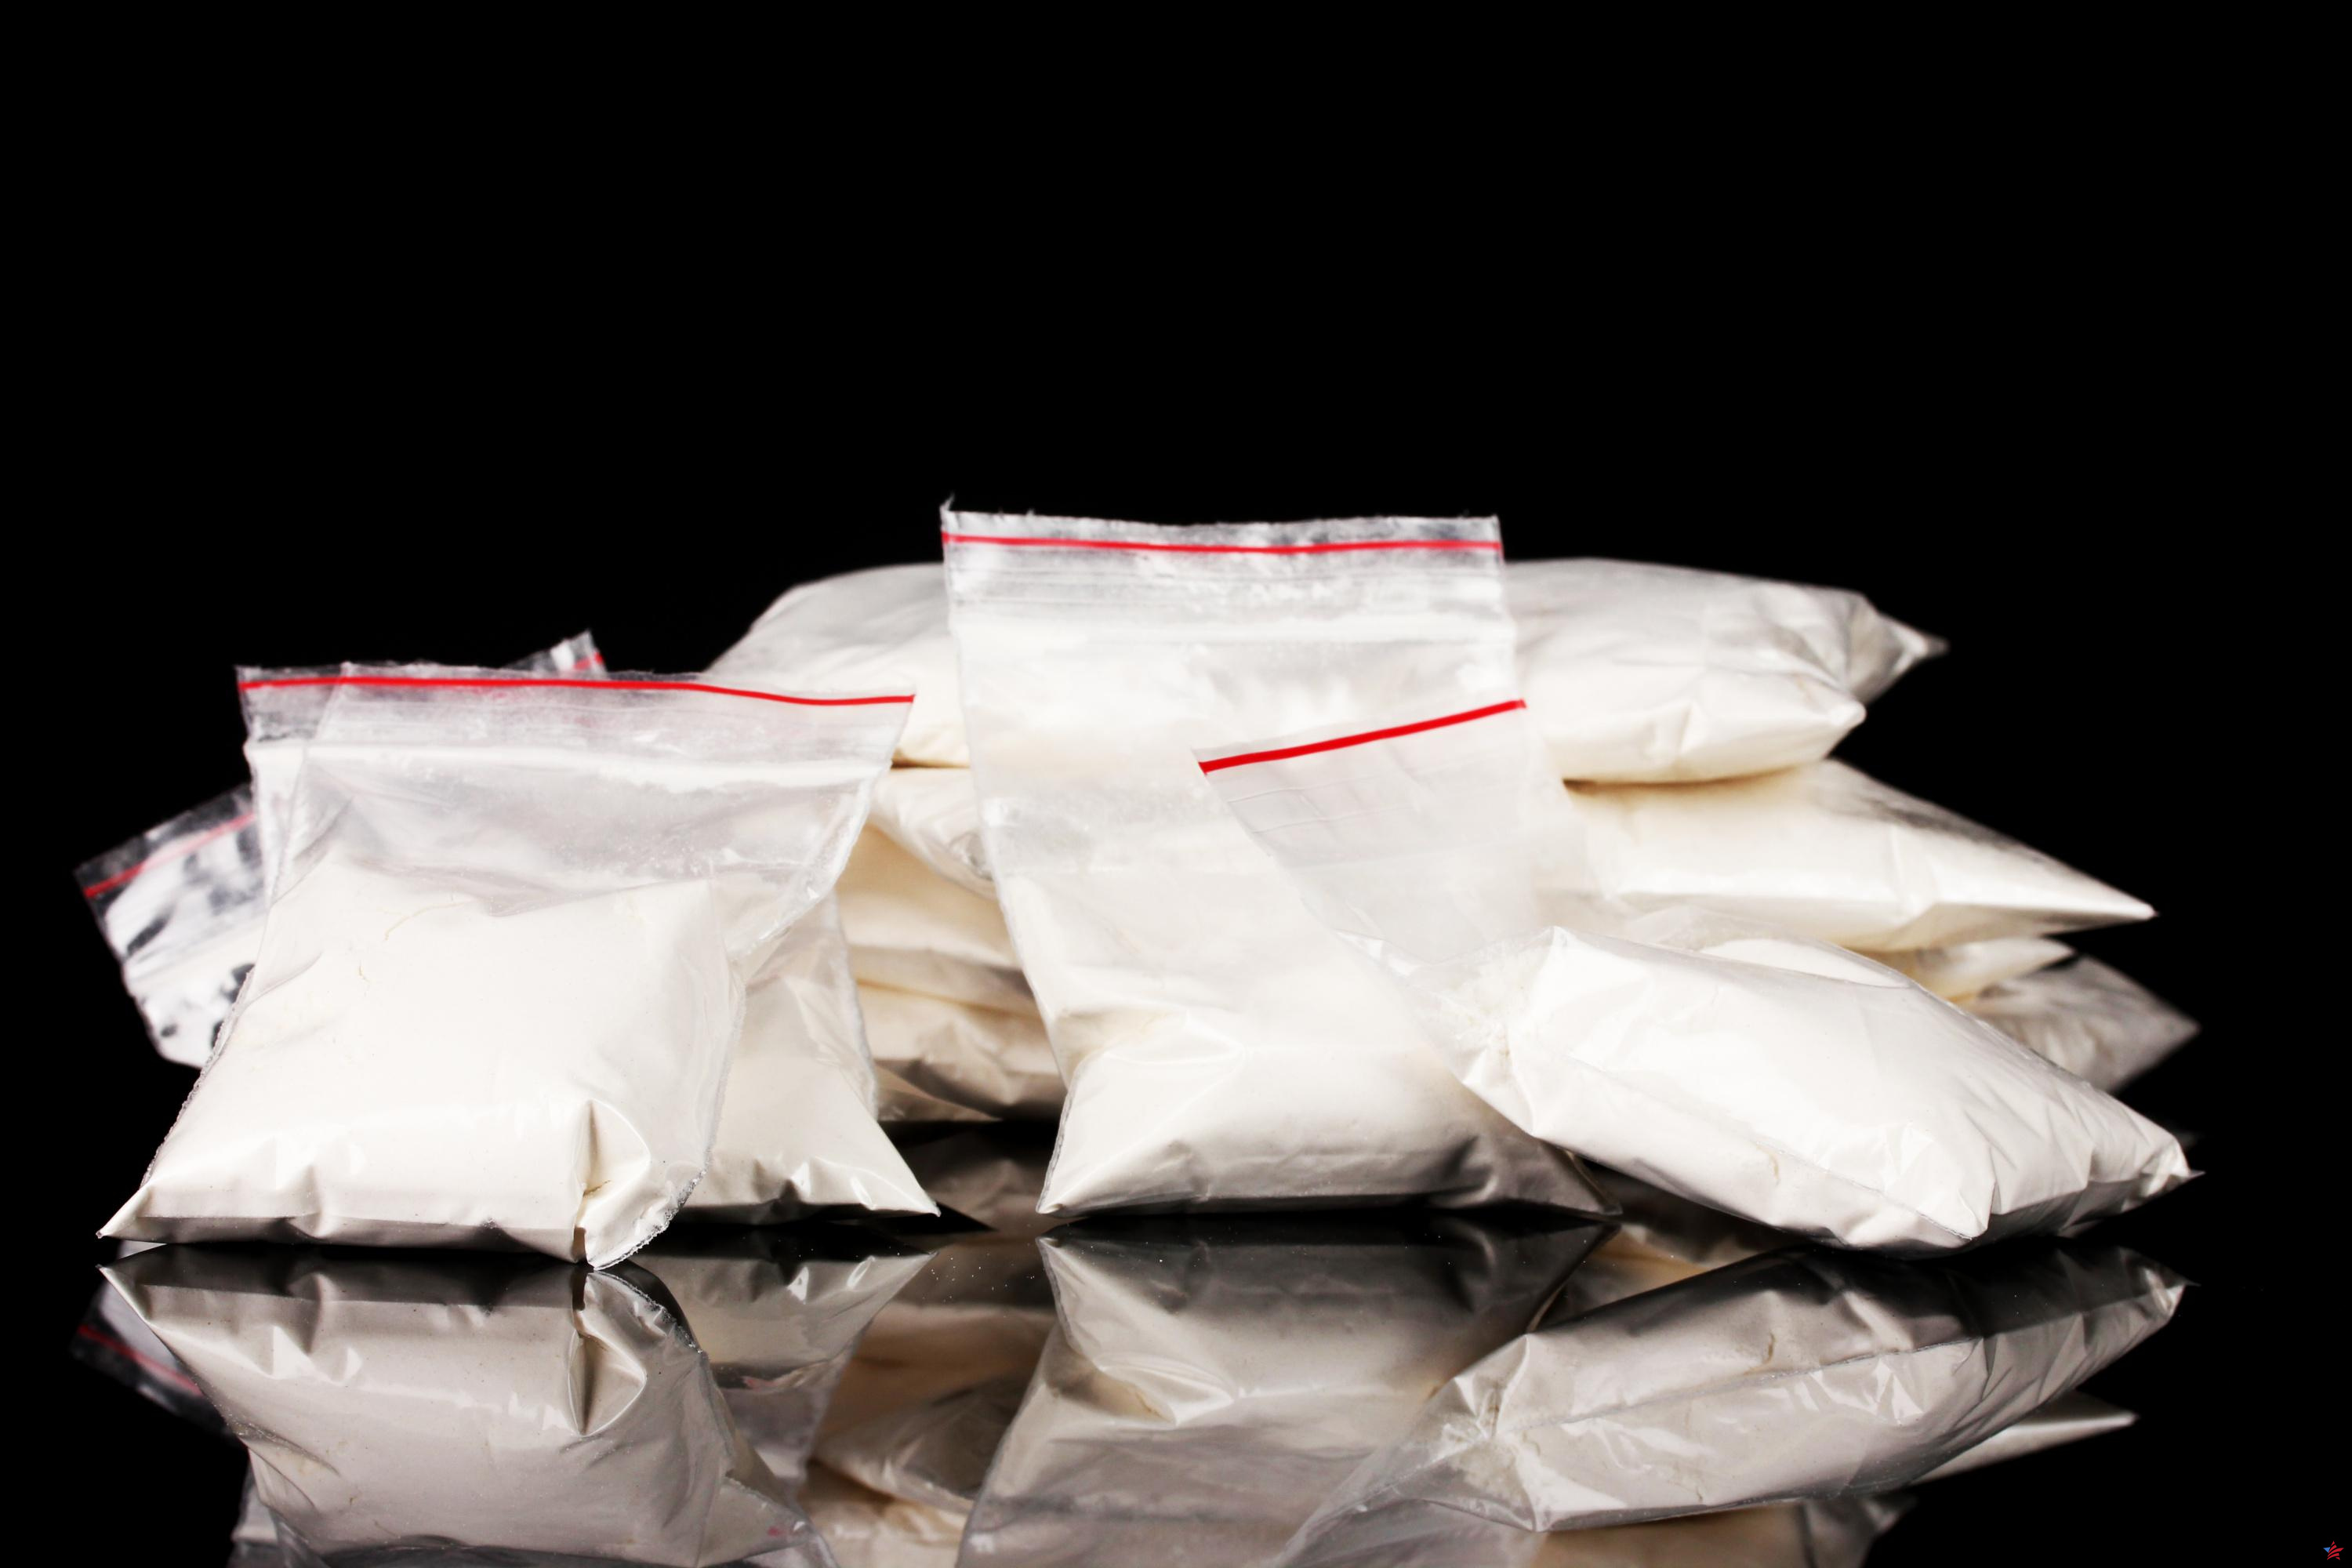 Cocaína en Europa: extradición de un narcotraficante de Amberes desde Dubai a Bélgica